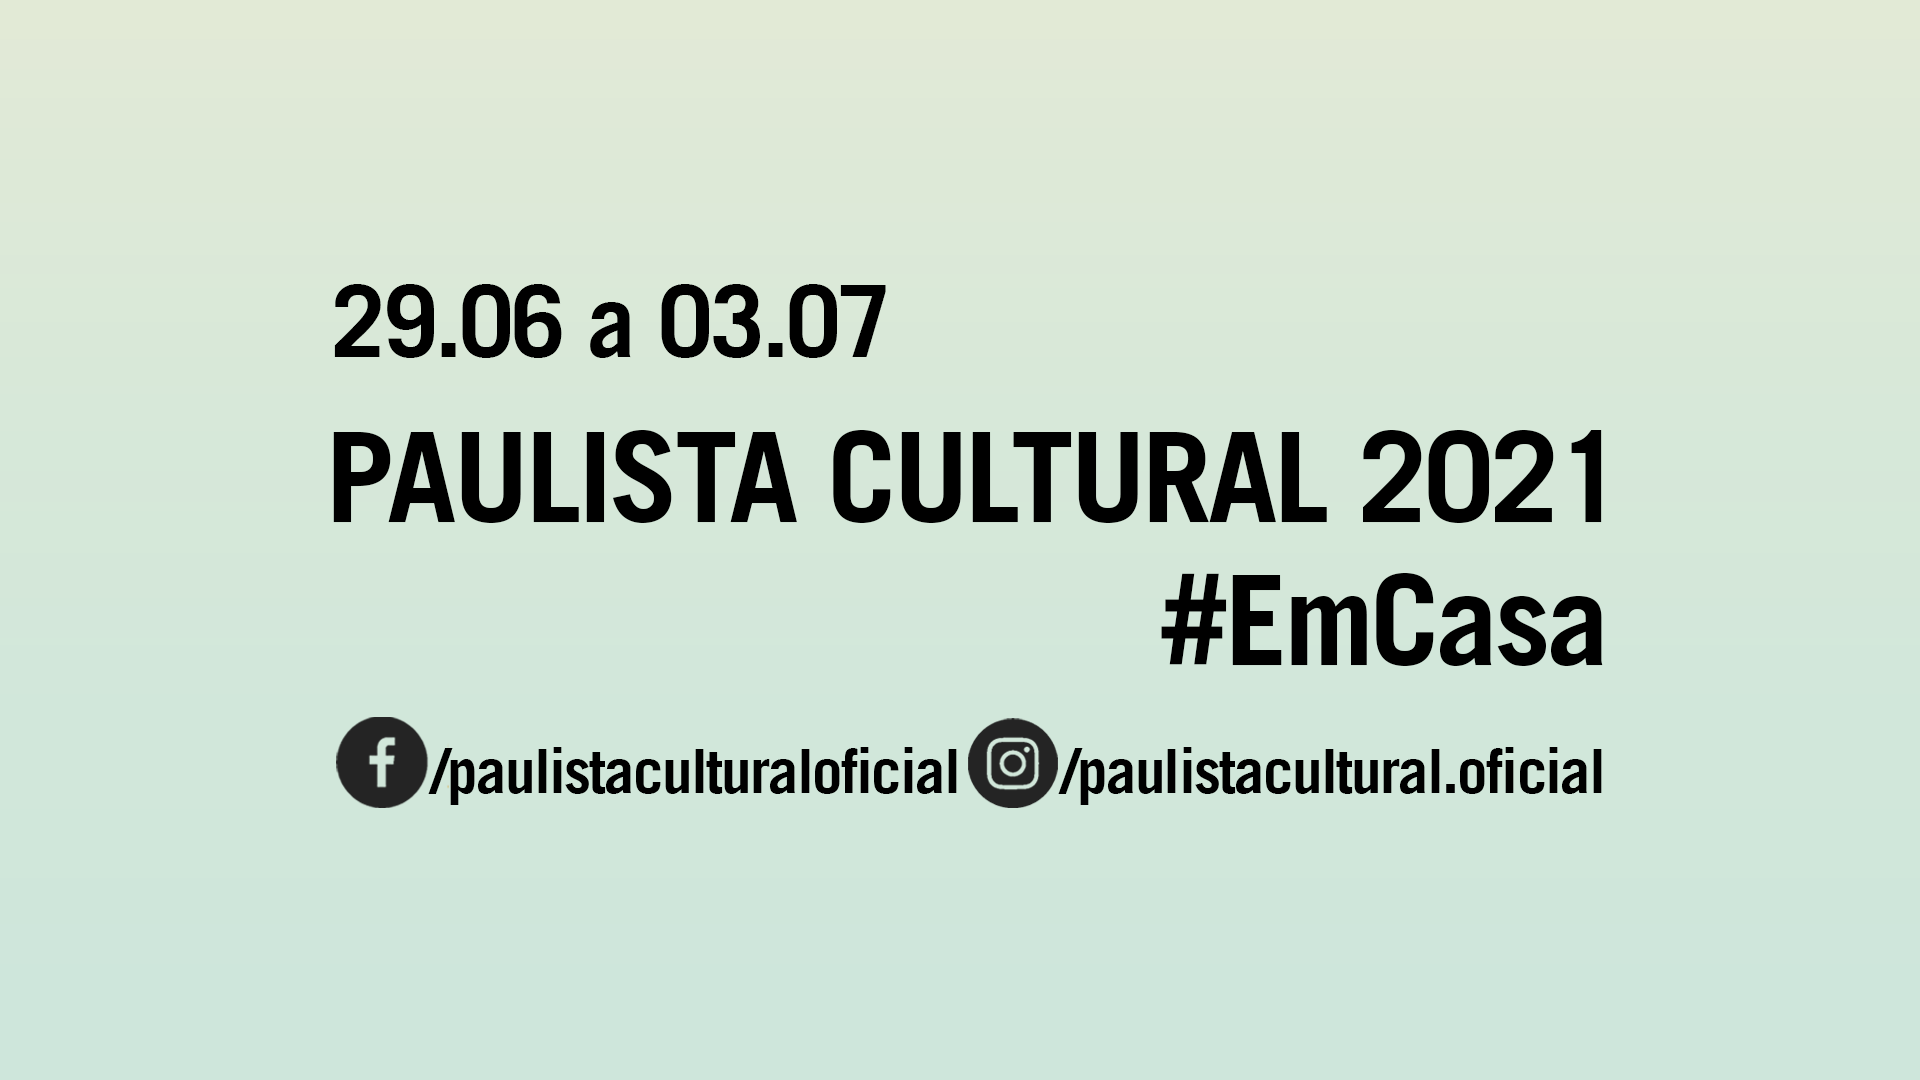 Banner informativo. Paulista Cultural 2021 #EmCasa, de 29 de junho a 03 de julho. Link do Facebook /paulistaculturaloficial e link do Instagram /paulistacultural.oficial / O texto está em preto e o fundo da imagem é azul claro.